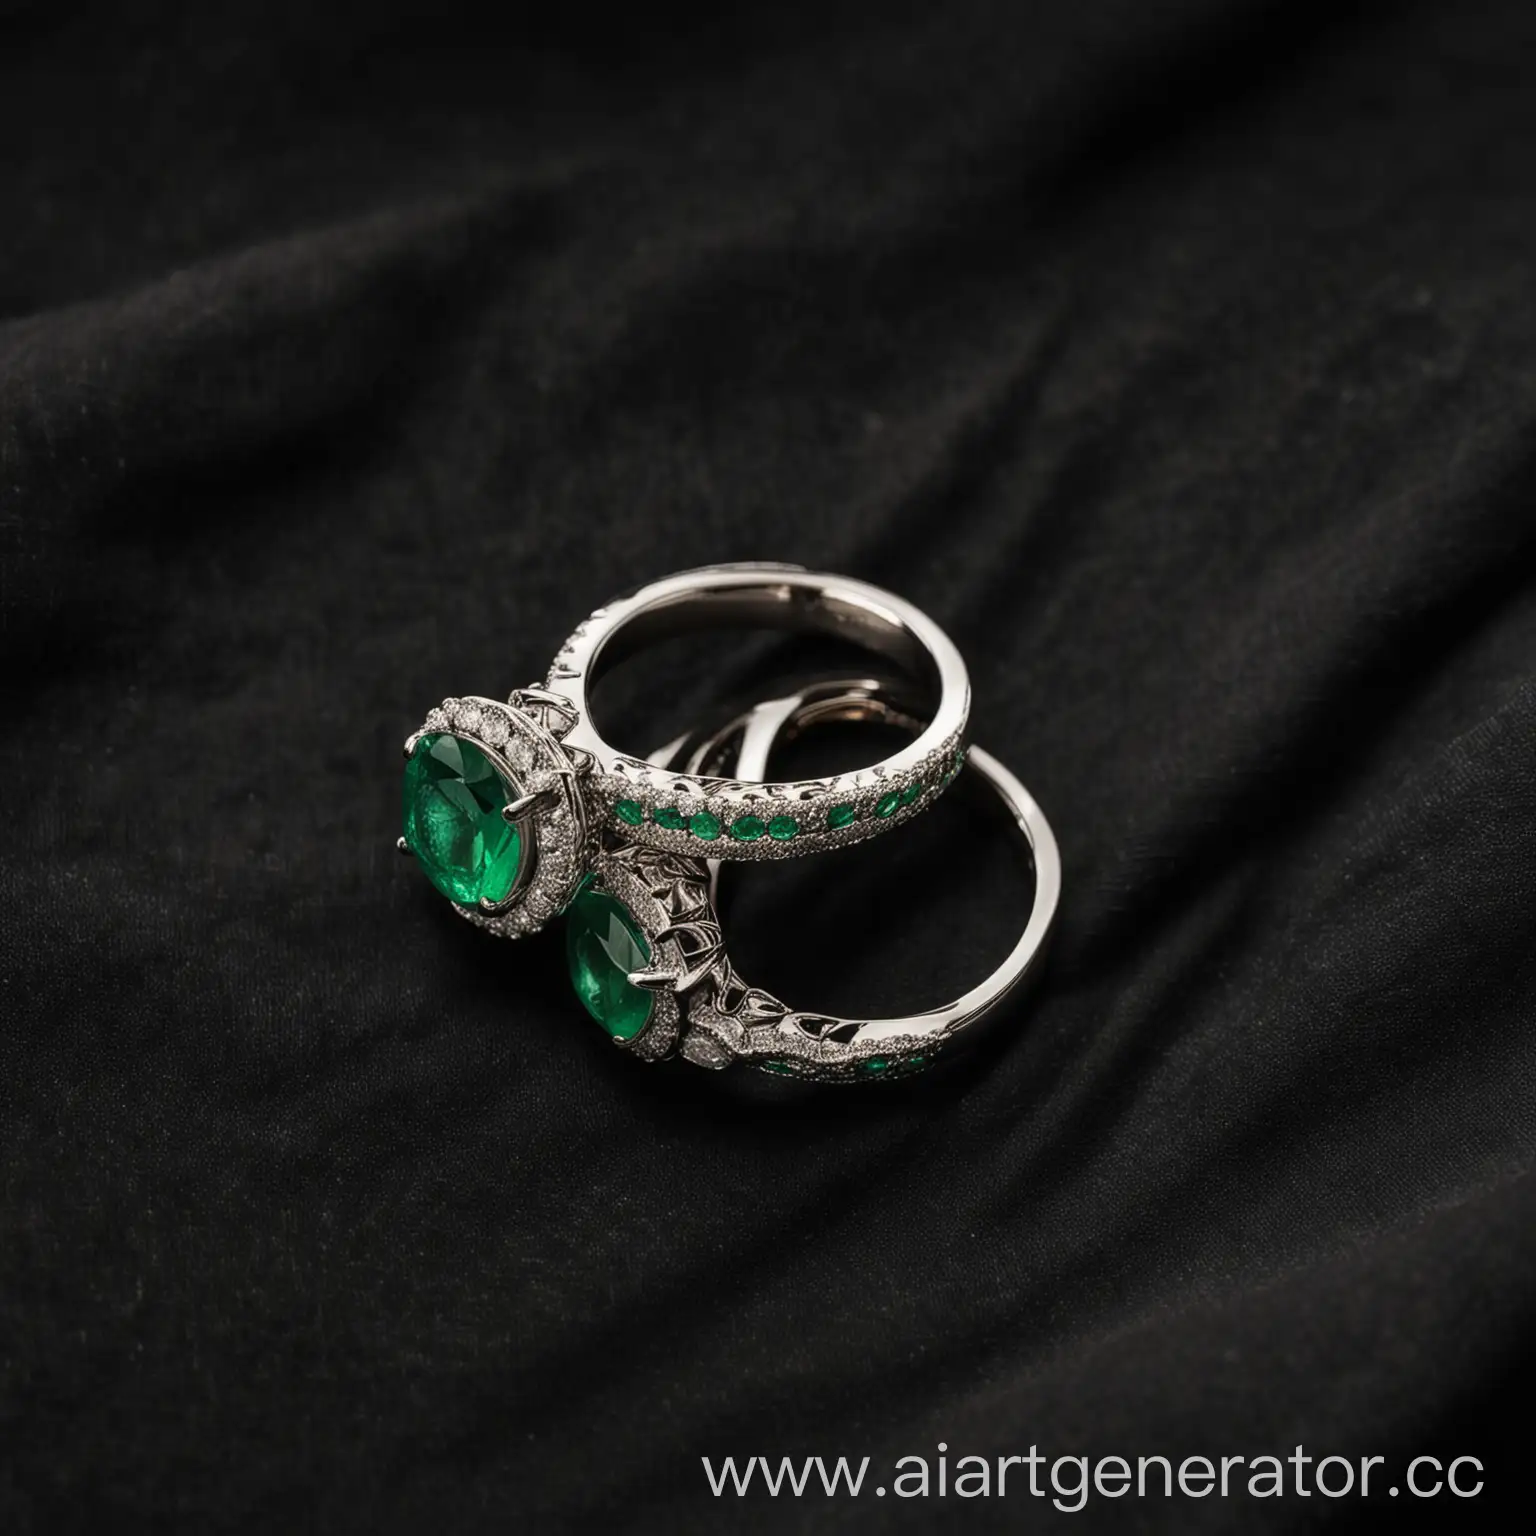 Два обручальных кольца с изумрудными камнями на черной ткани